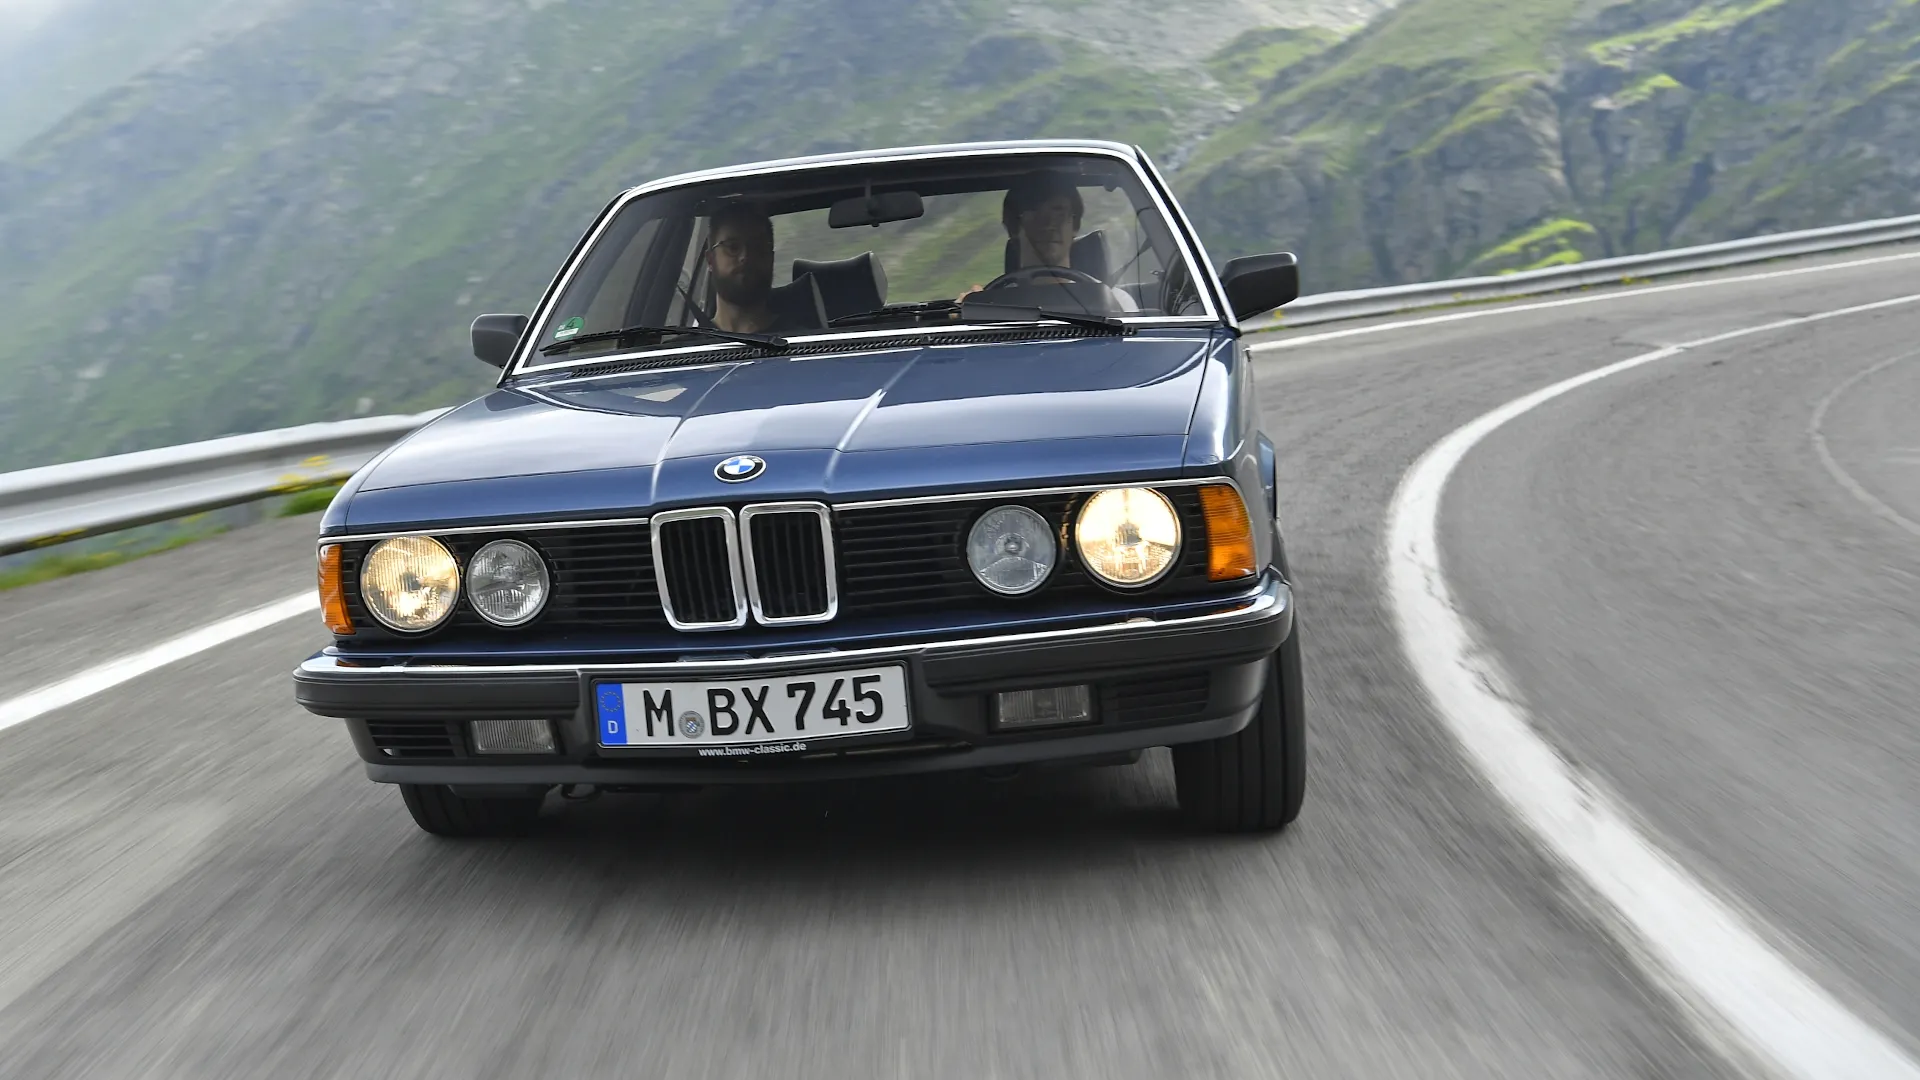 Coche del día: BMW Serie 7 (E23)